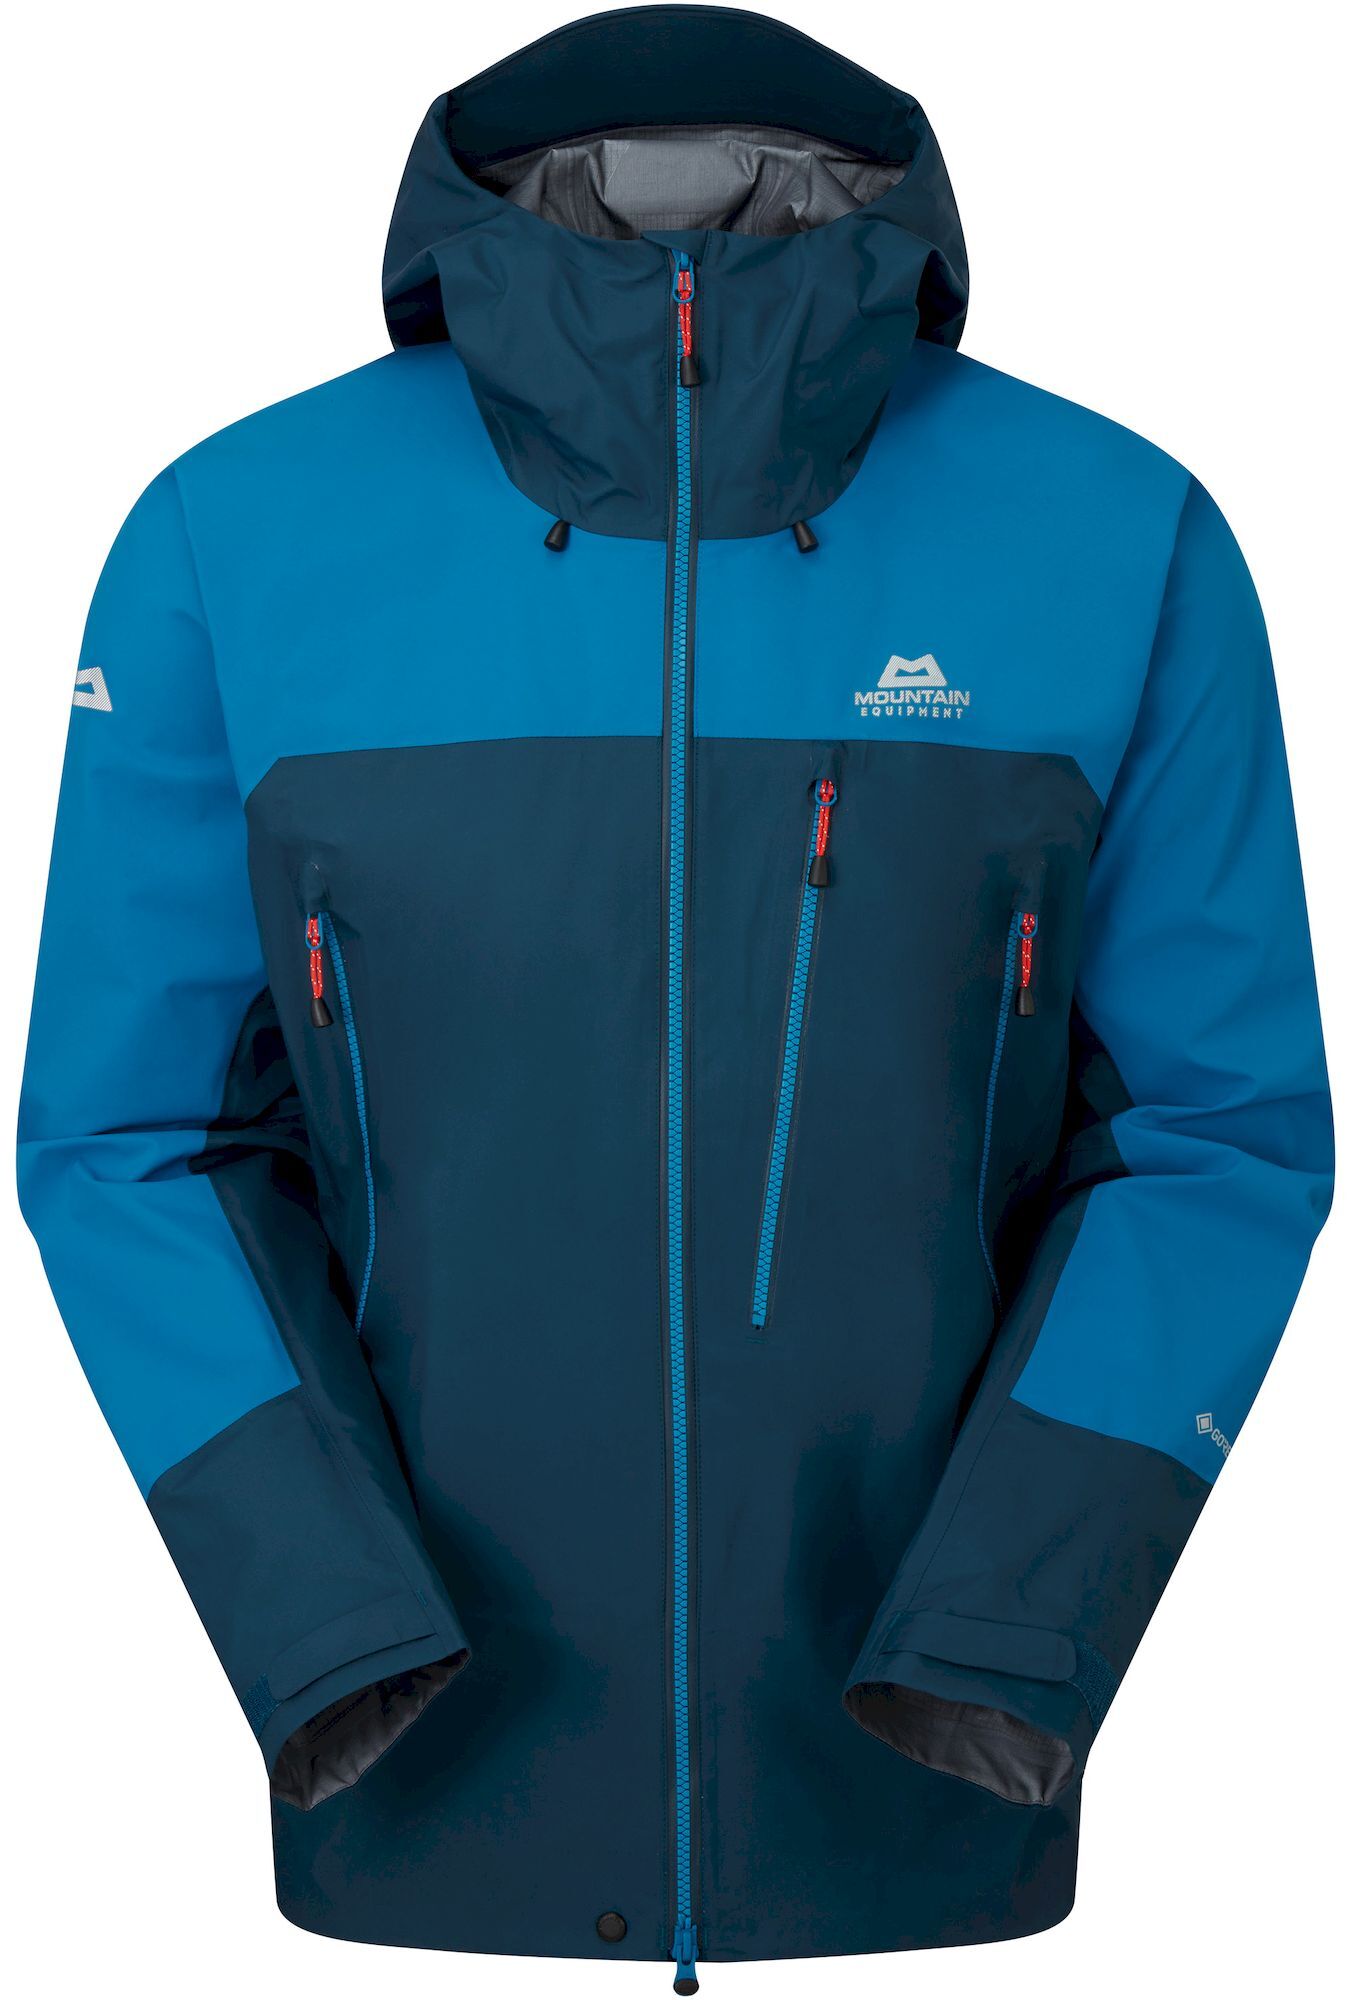 Mountain Equipment Lhotse Jacket - Waterproof jacket - Men's